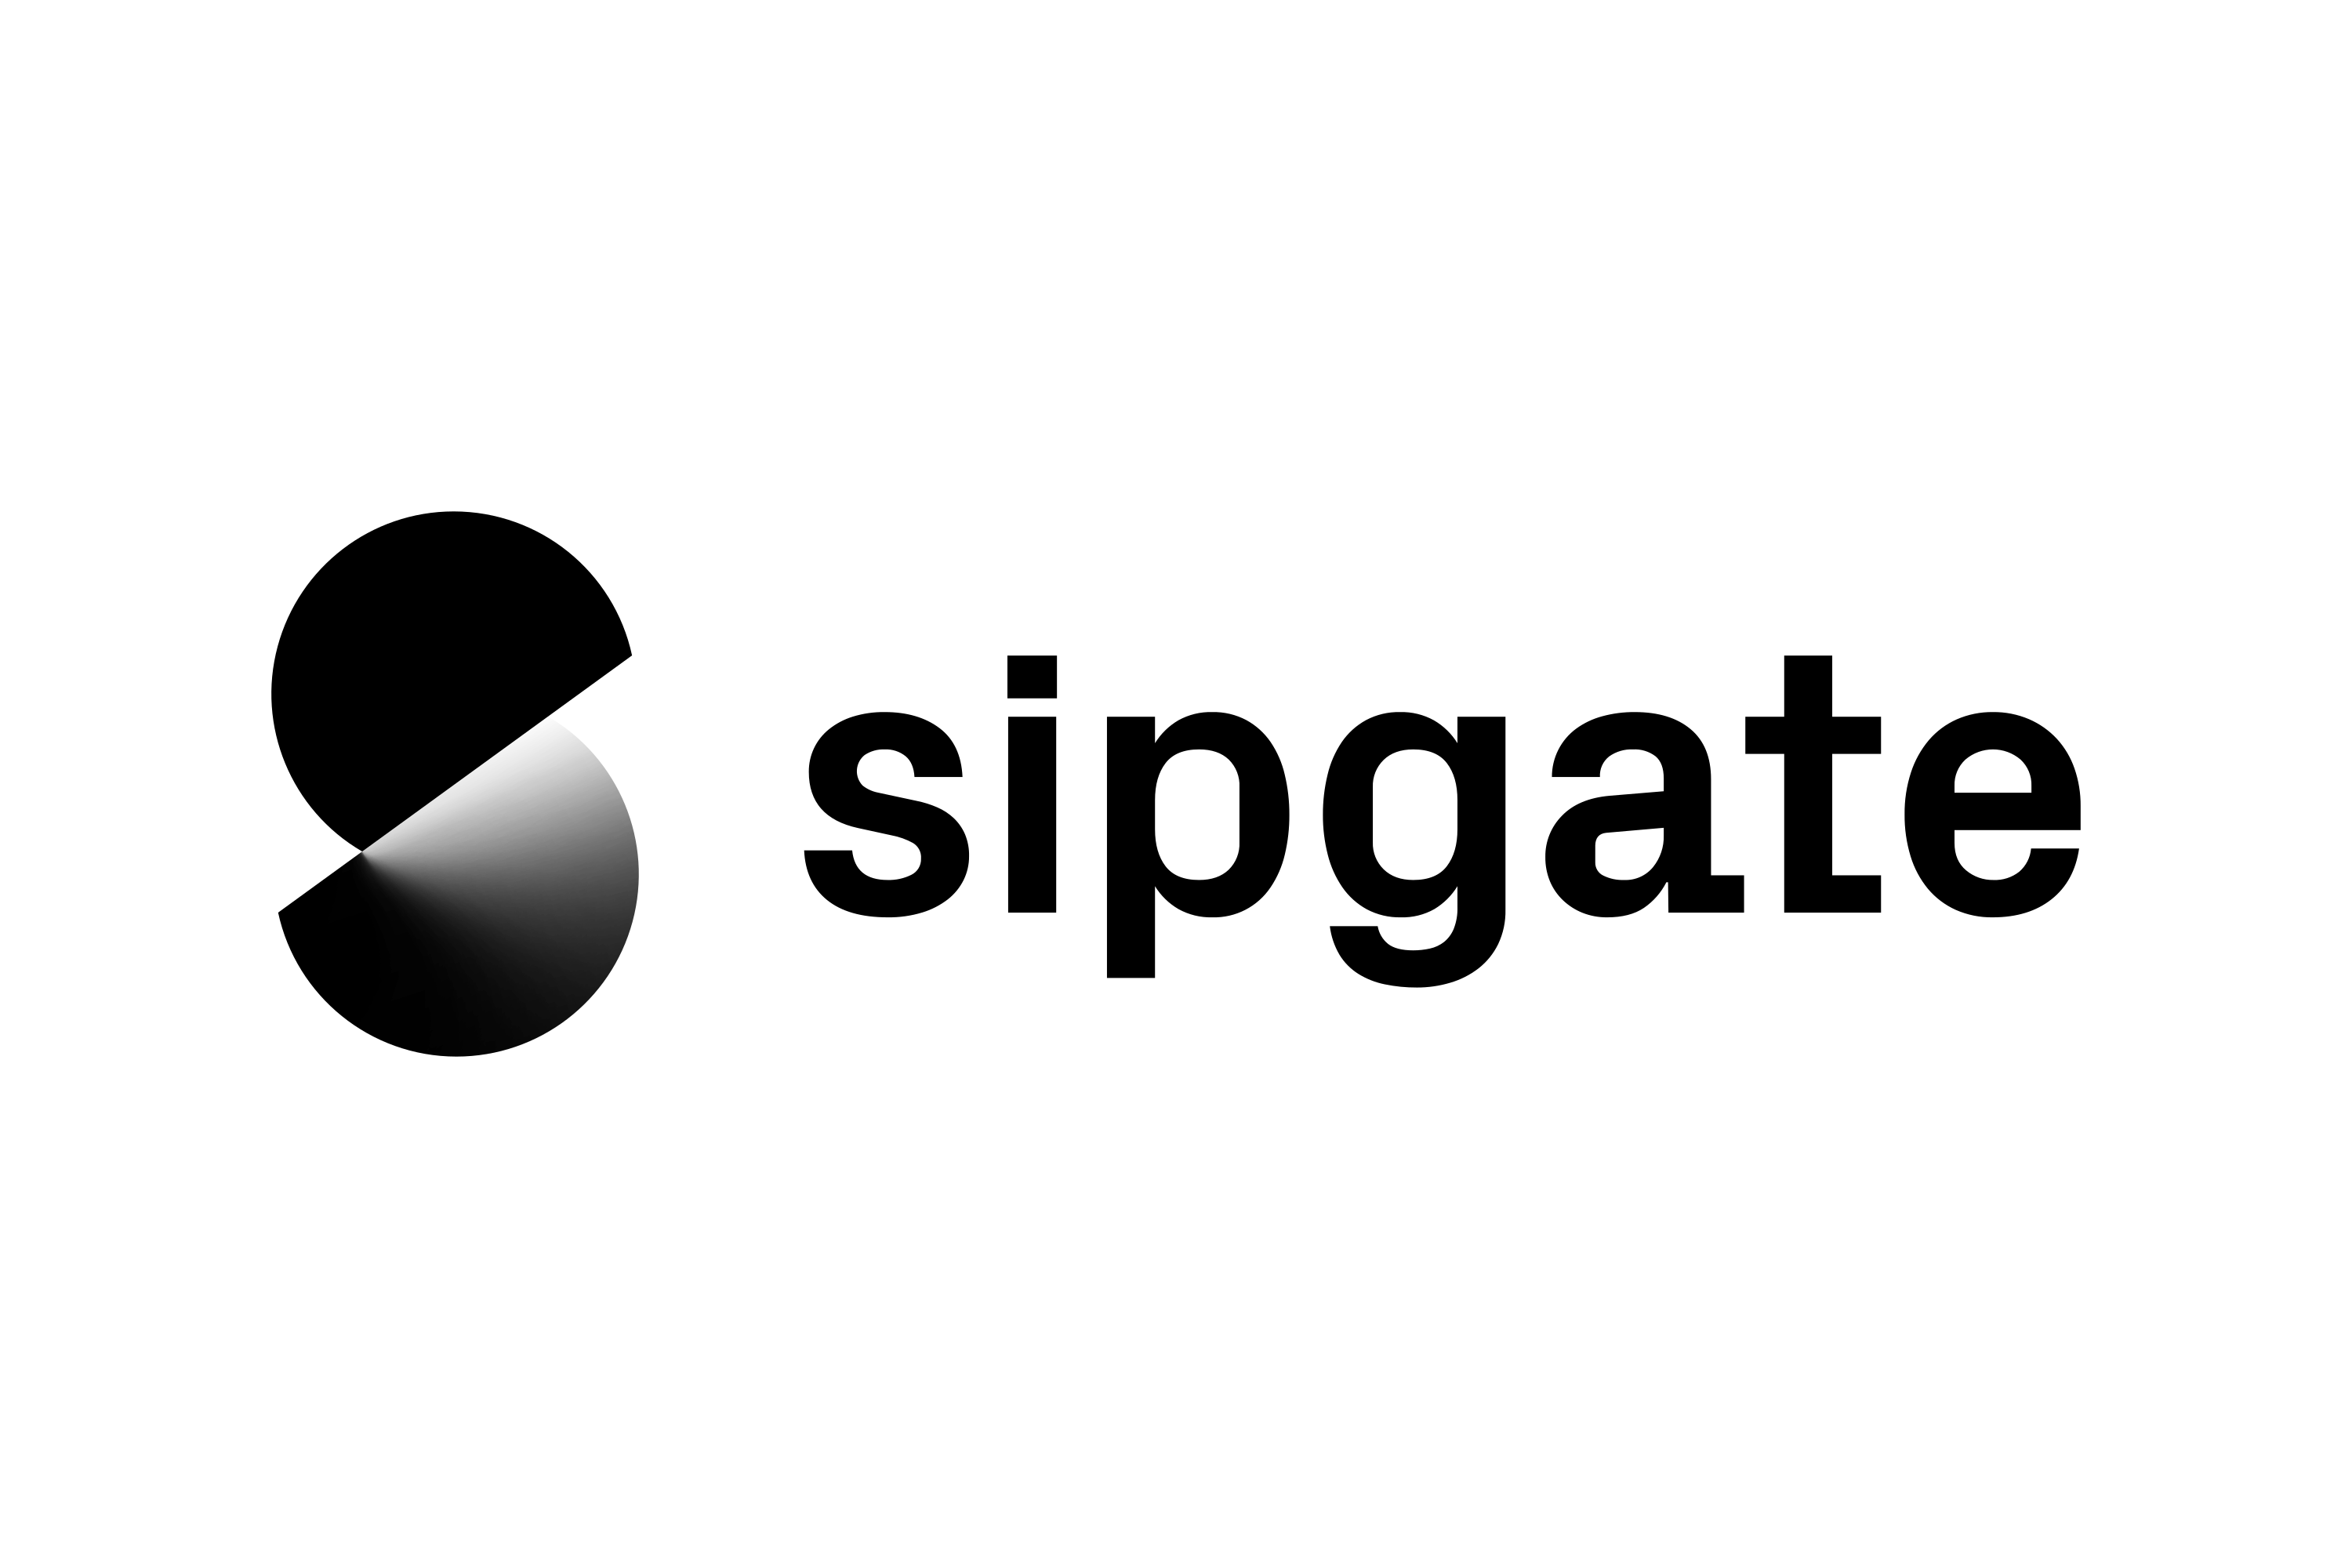 sipgate Logo